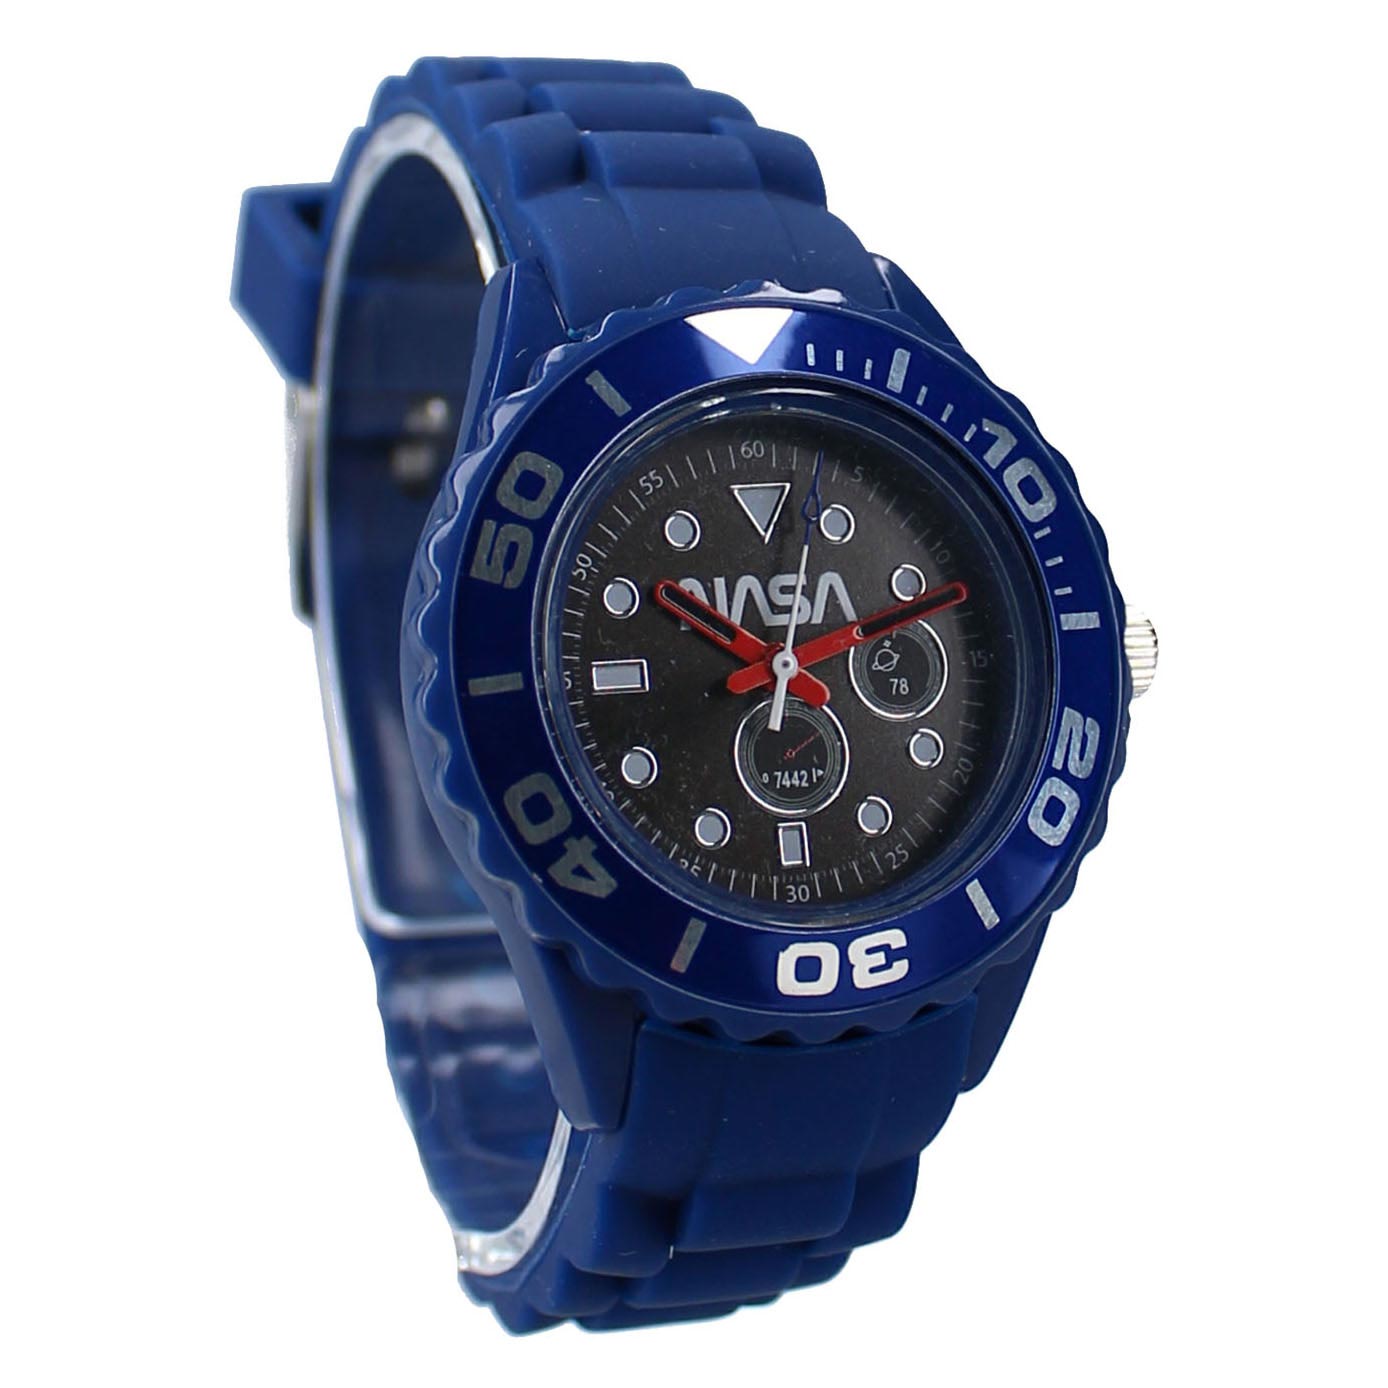 NASA Kids Time! Horloge - Blauw